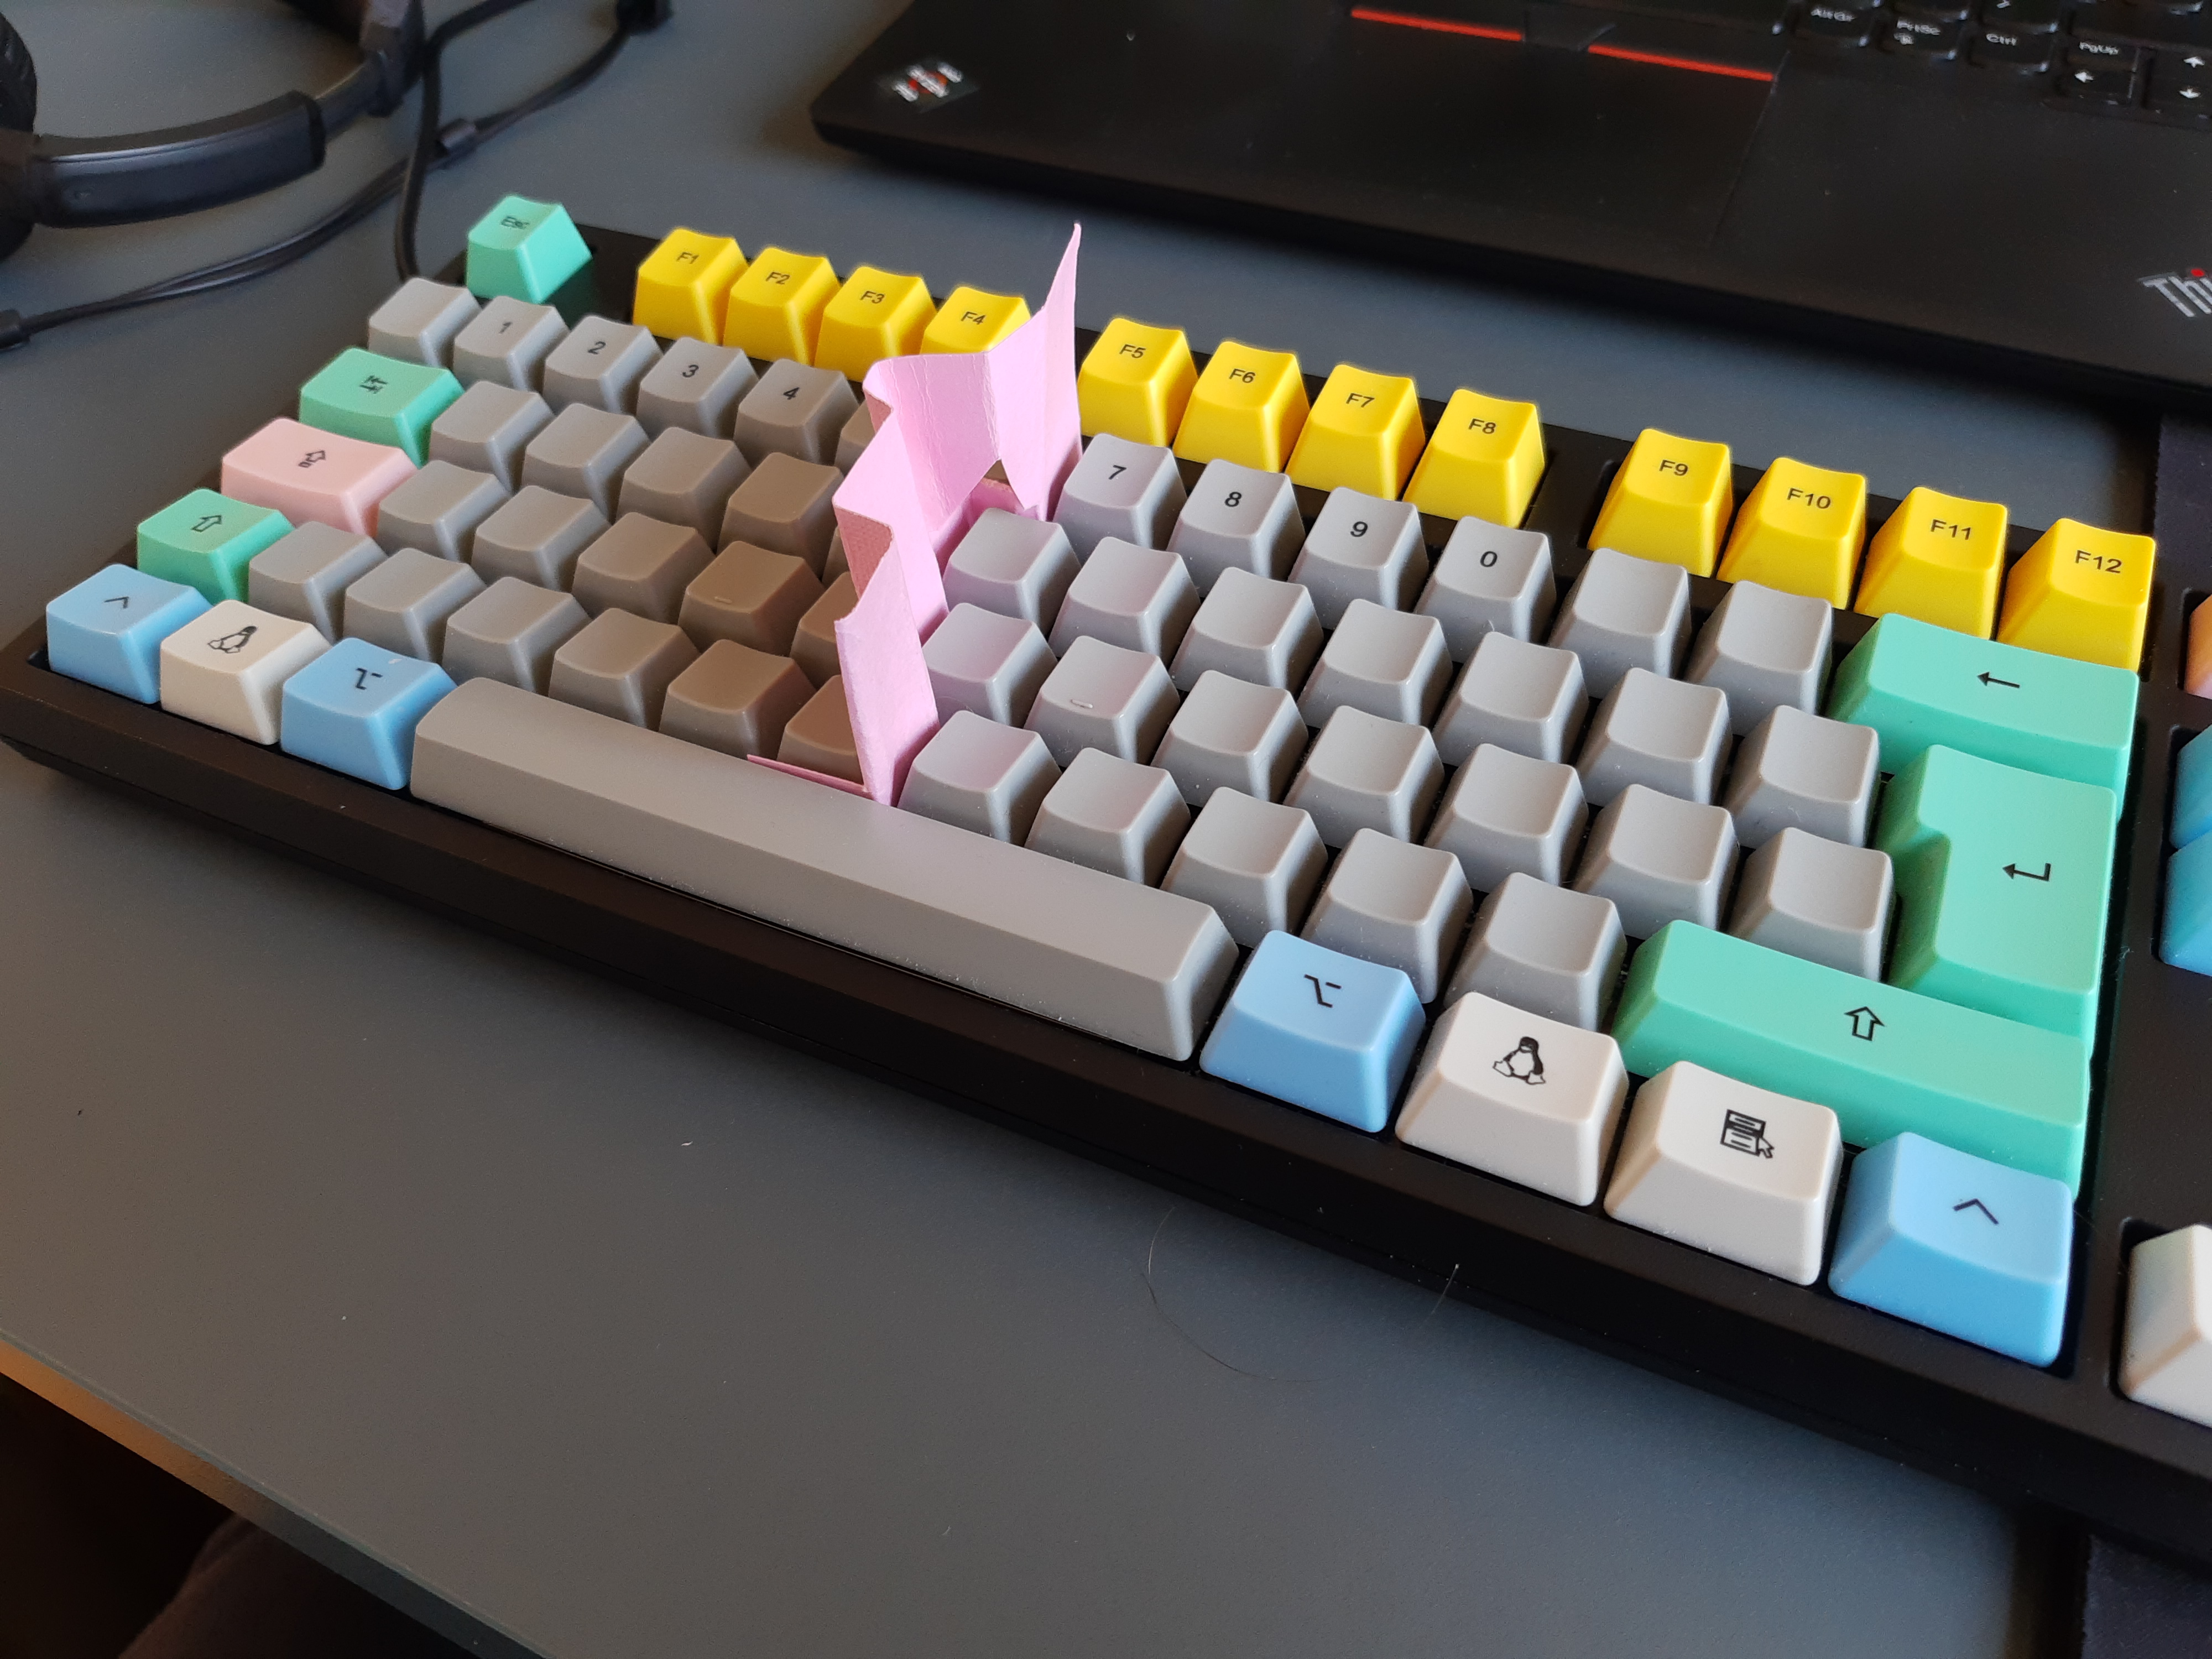 keyboard divider v2